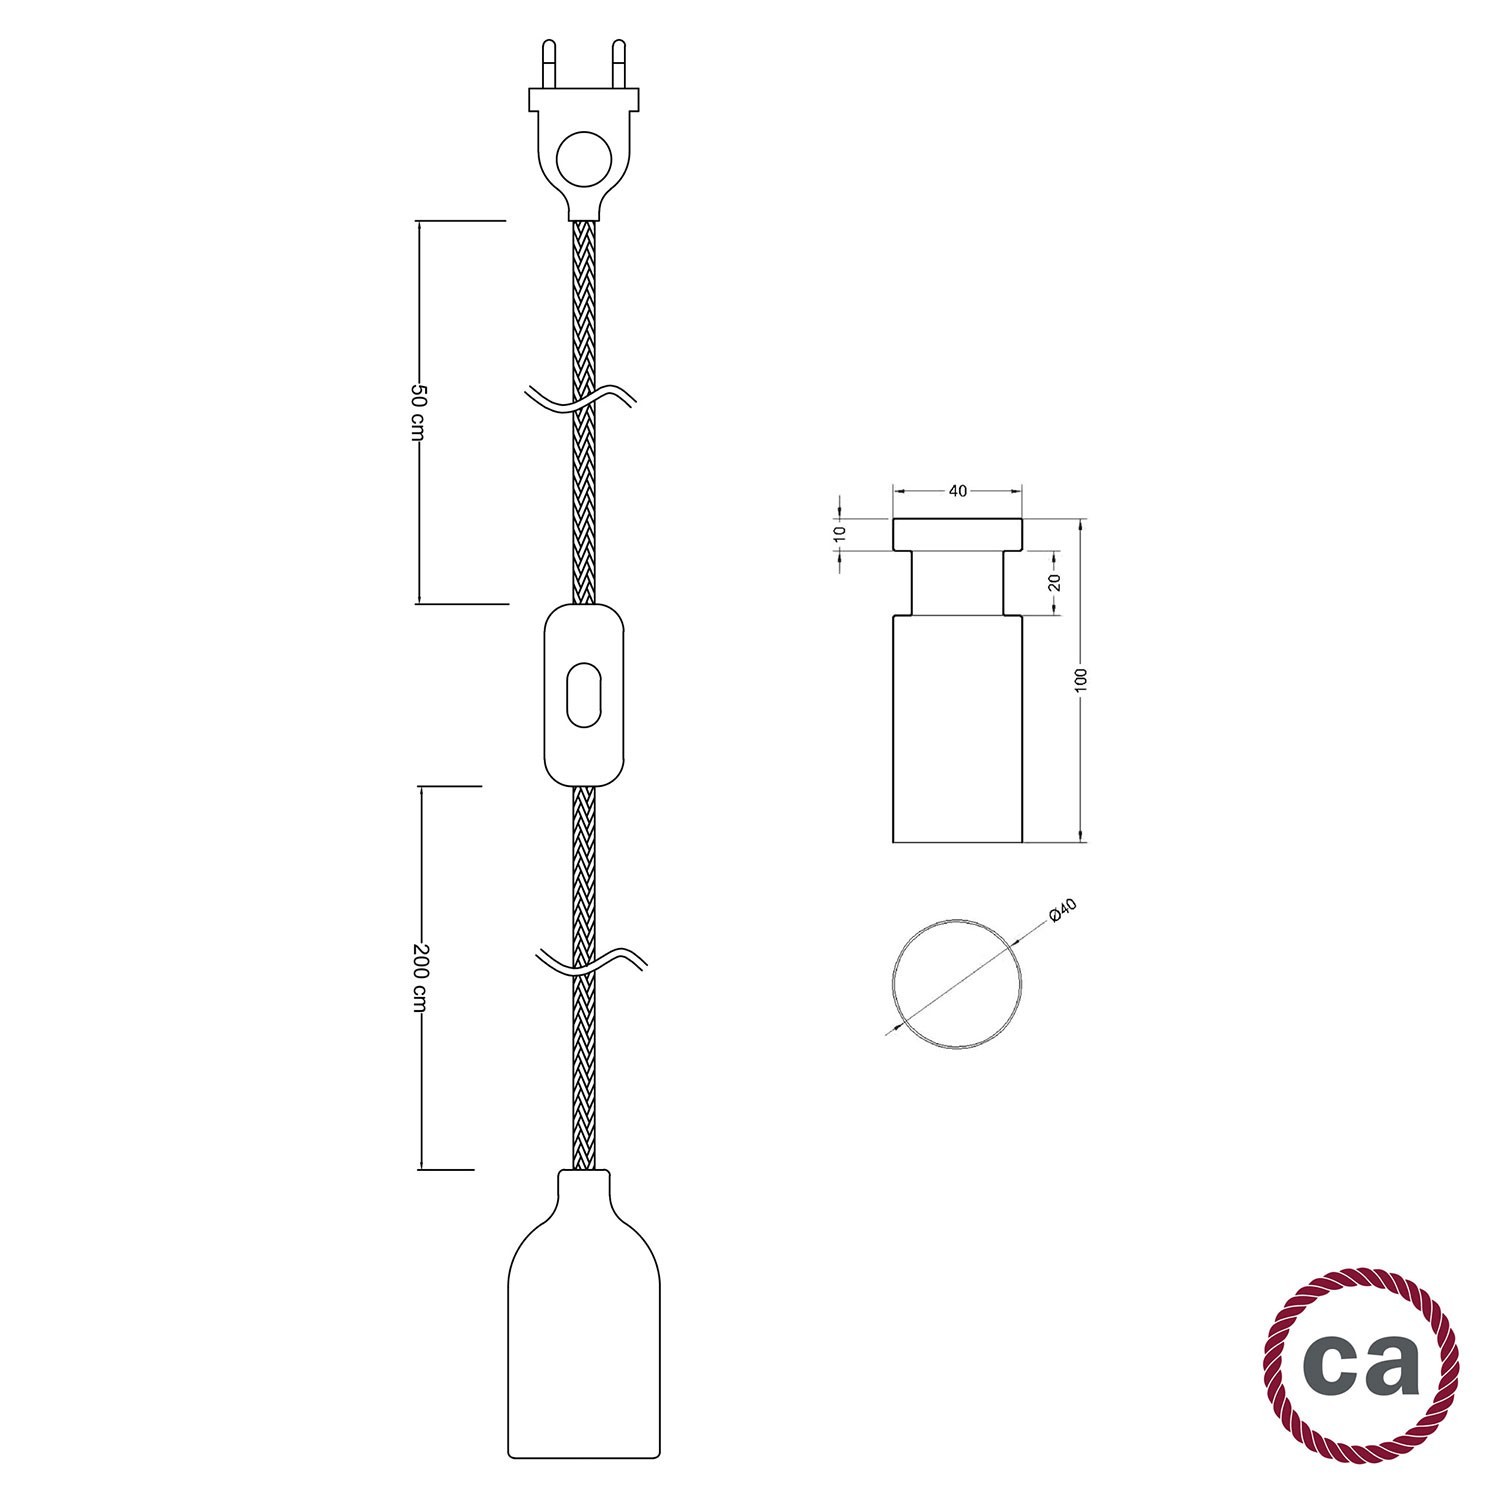 Schalter-stecker-Kabel-Fassung kombination für Hennlampen, Eisenlaternen   - Albazar